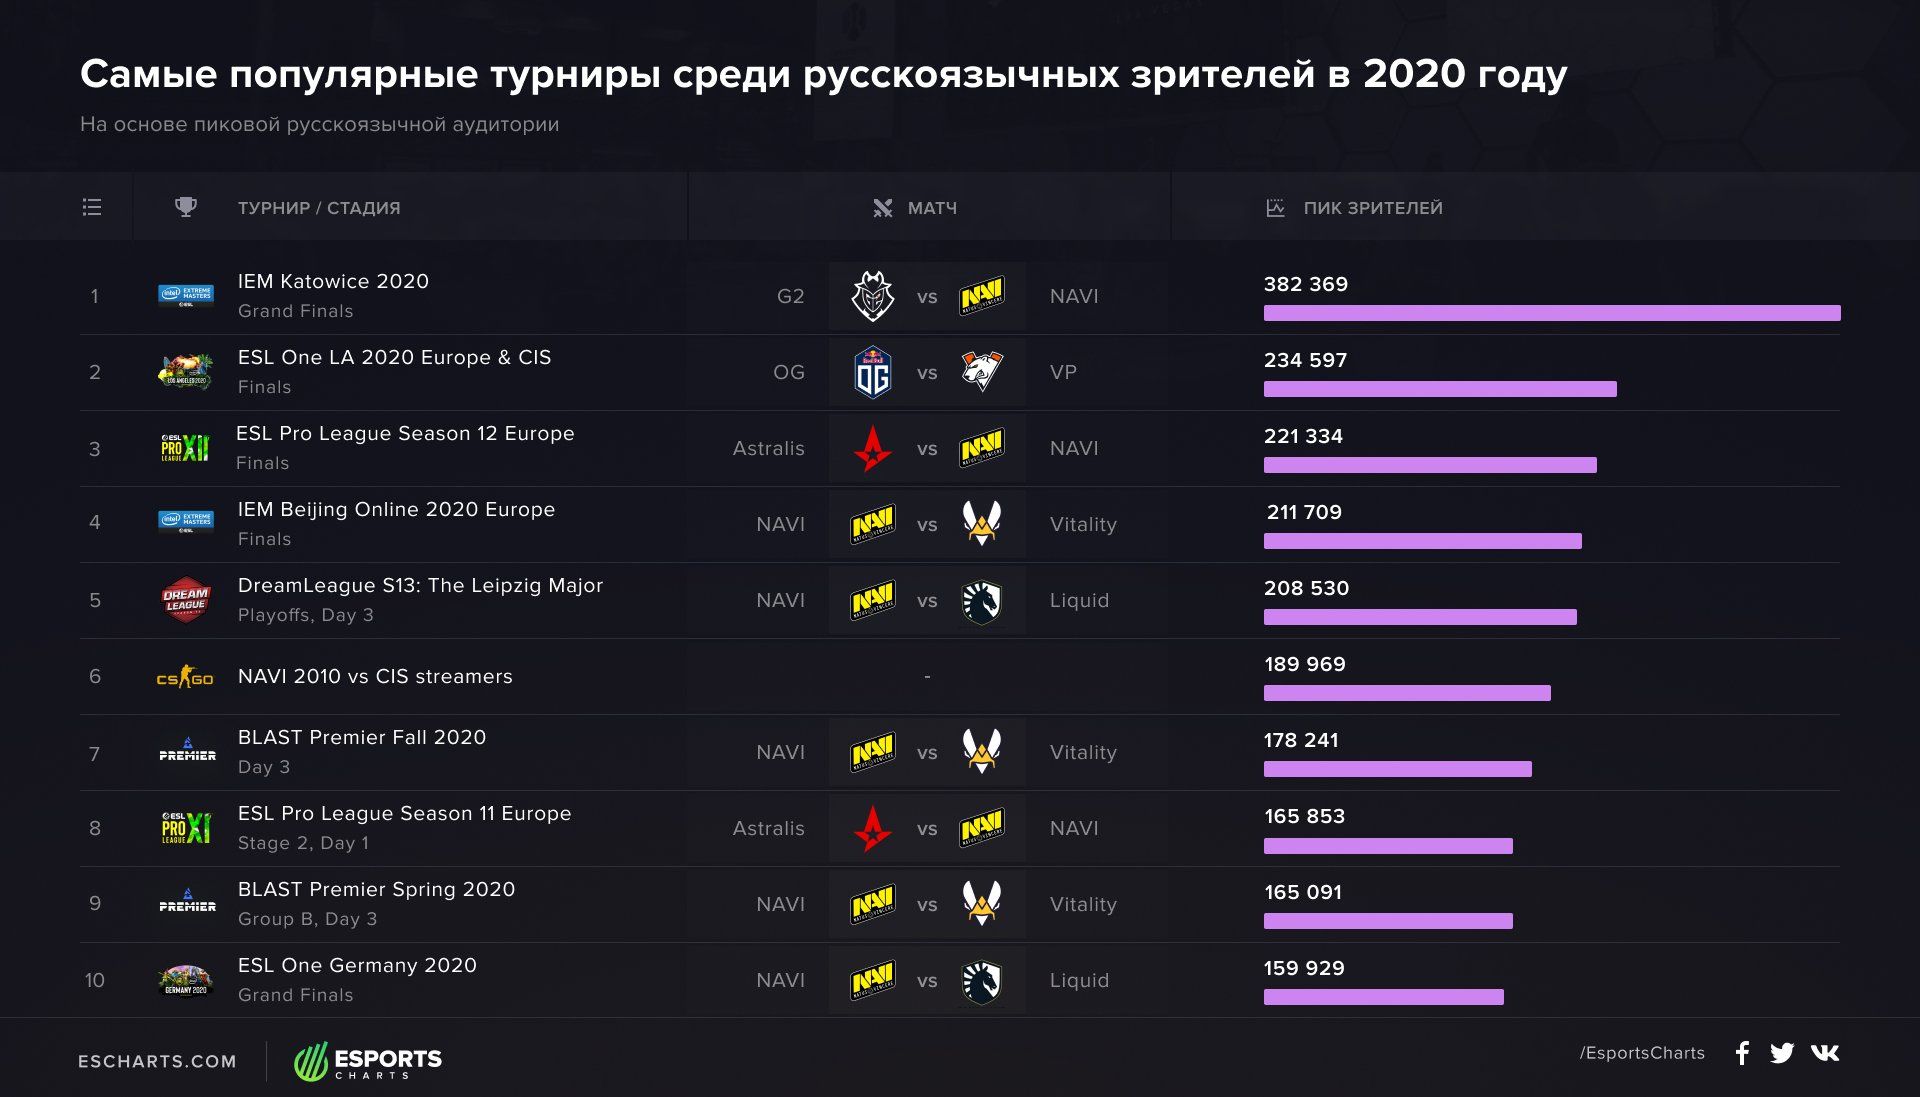 Турниры с самым большим пиковым онлайном на русскоязычных стримах в 2020 году | Источник: Esports Charts